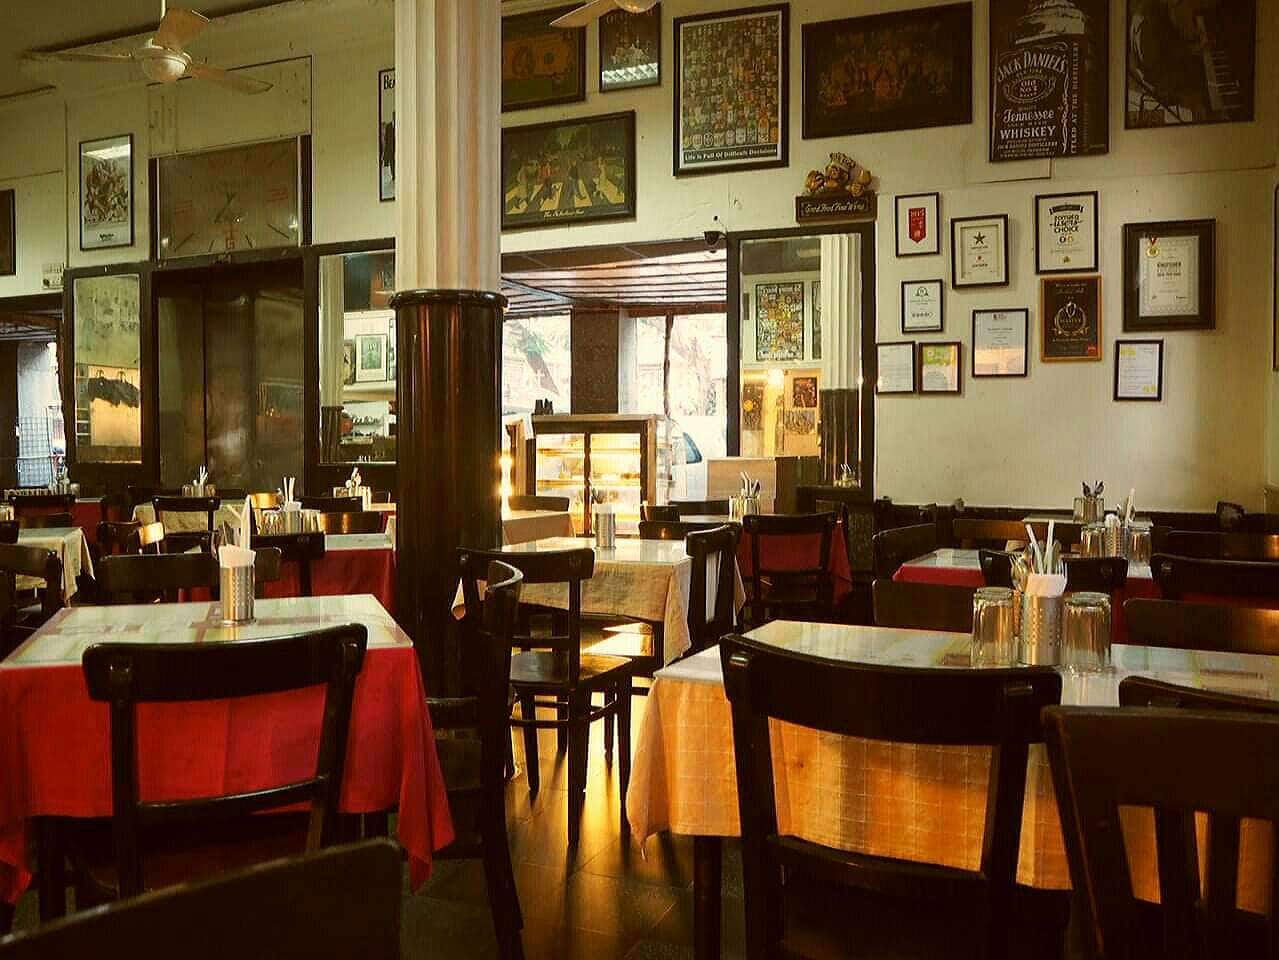 Leopold Cafe & Bar, Colaba, Mumbai